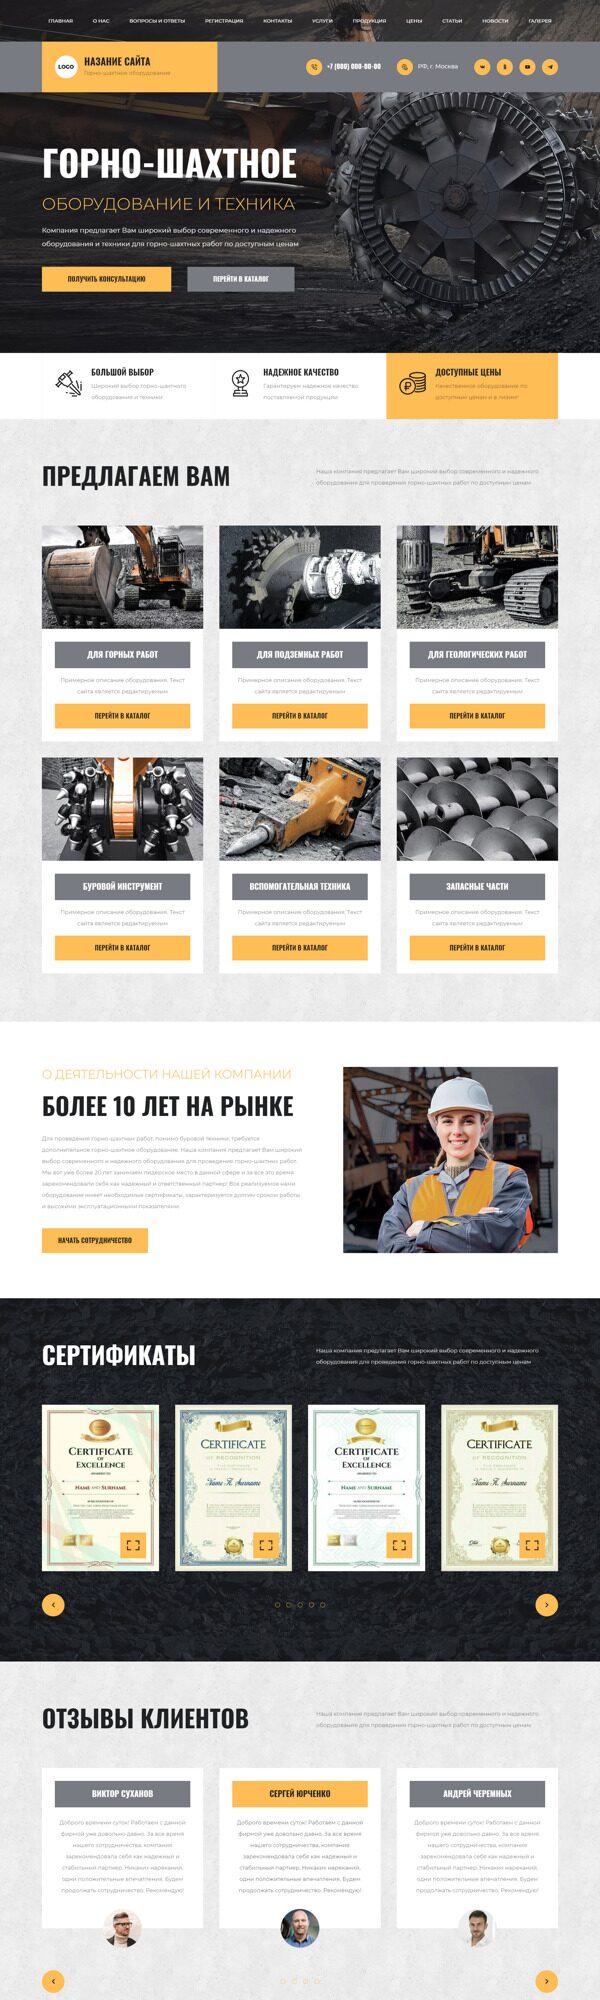 Готовый Сайт-Бизнес № 5275175 - Горно-шахтное оборудование (Десктопная версия)